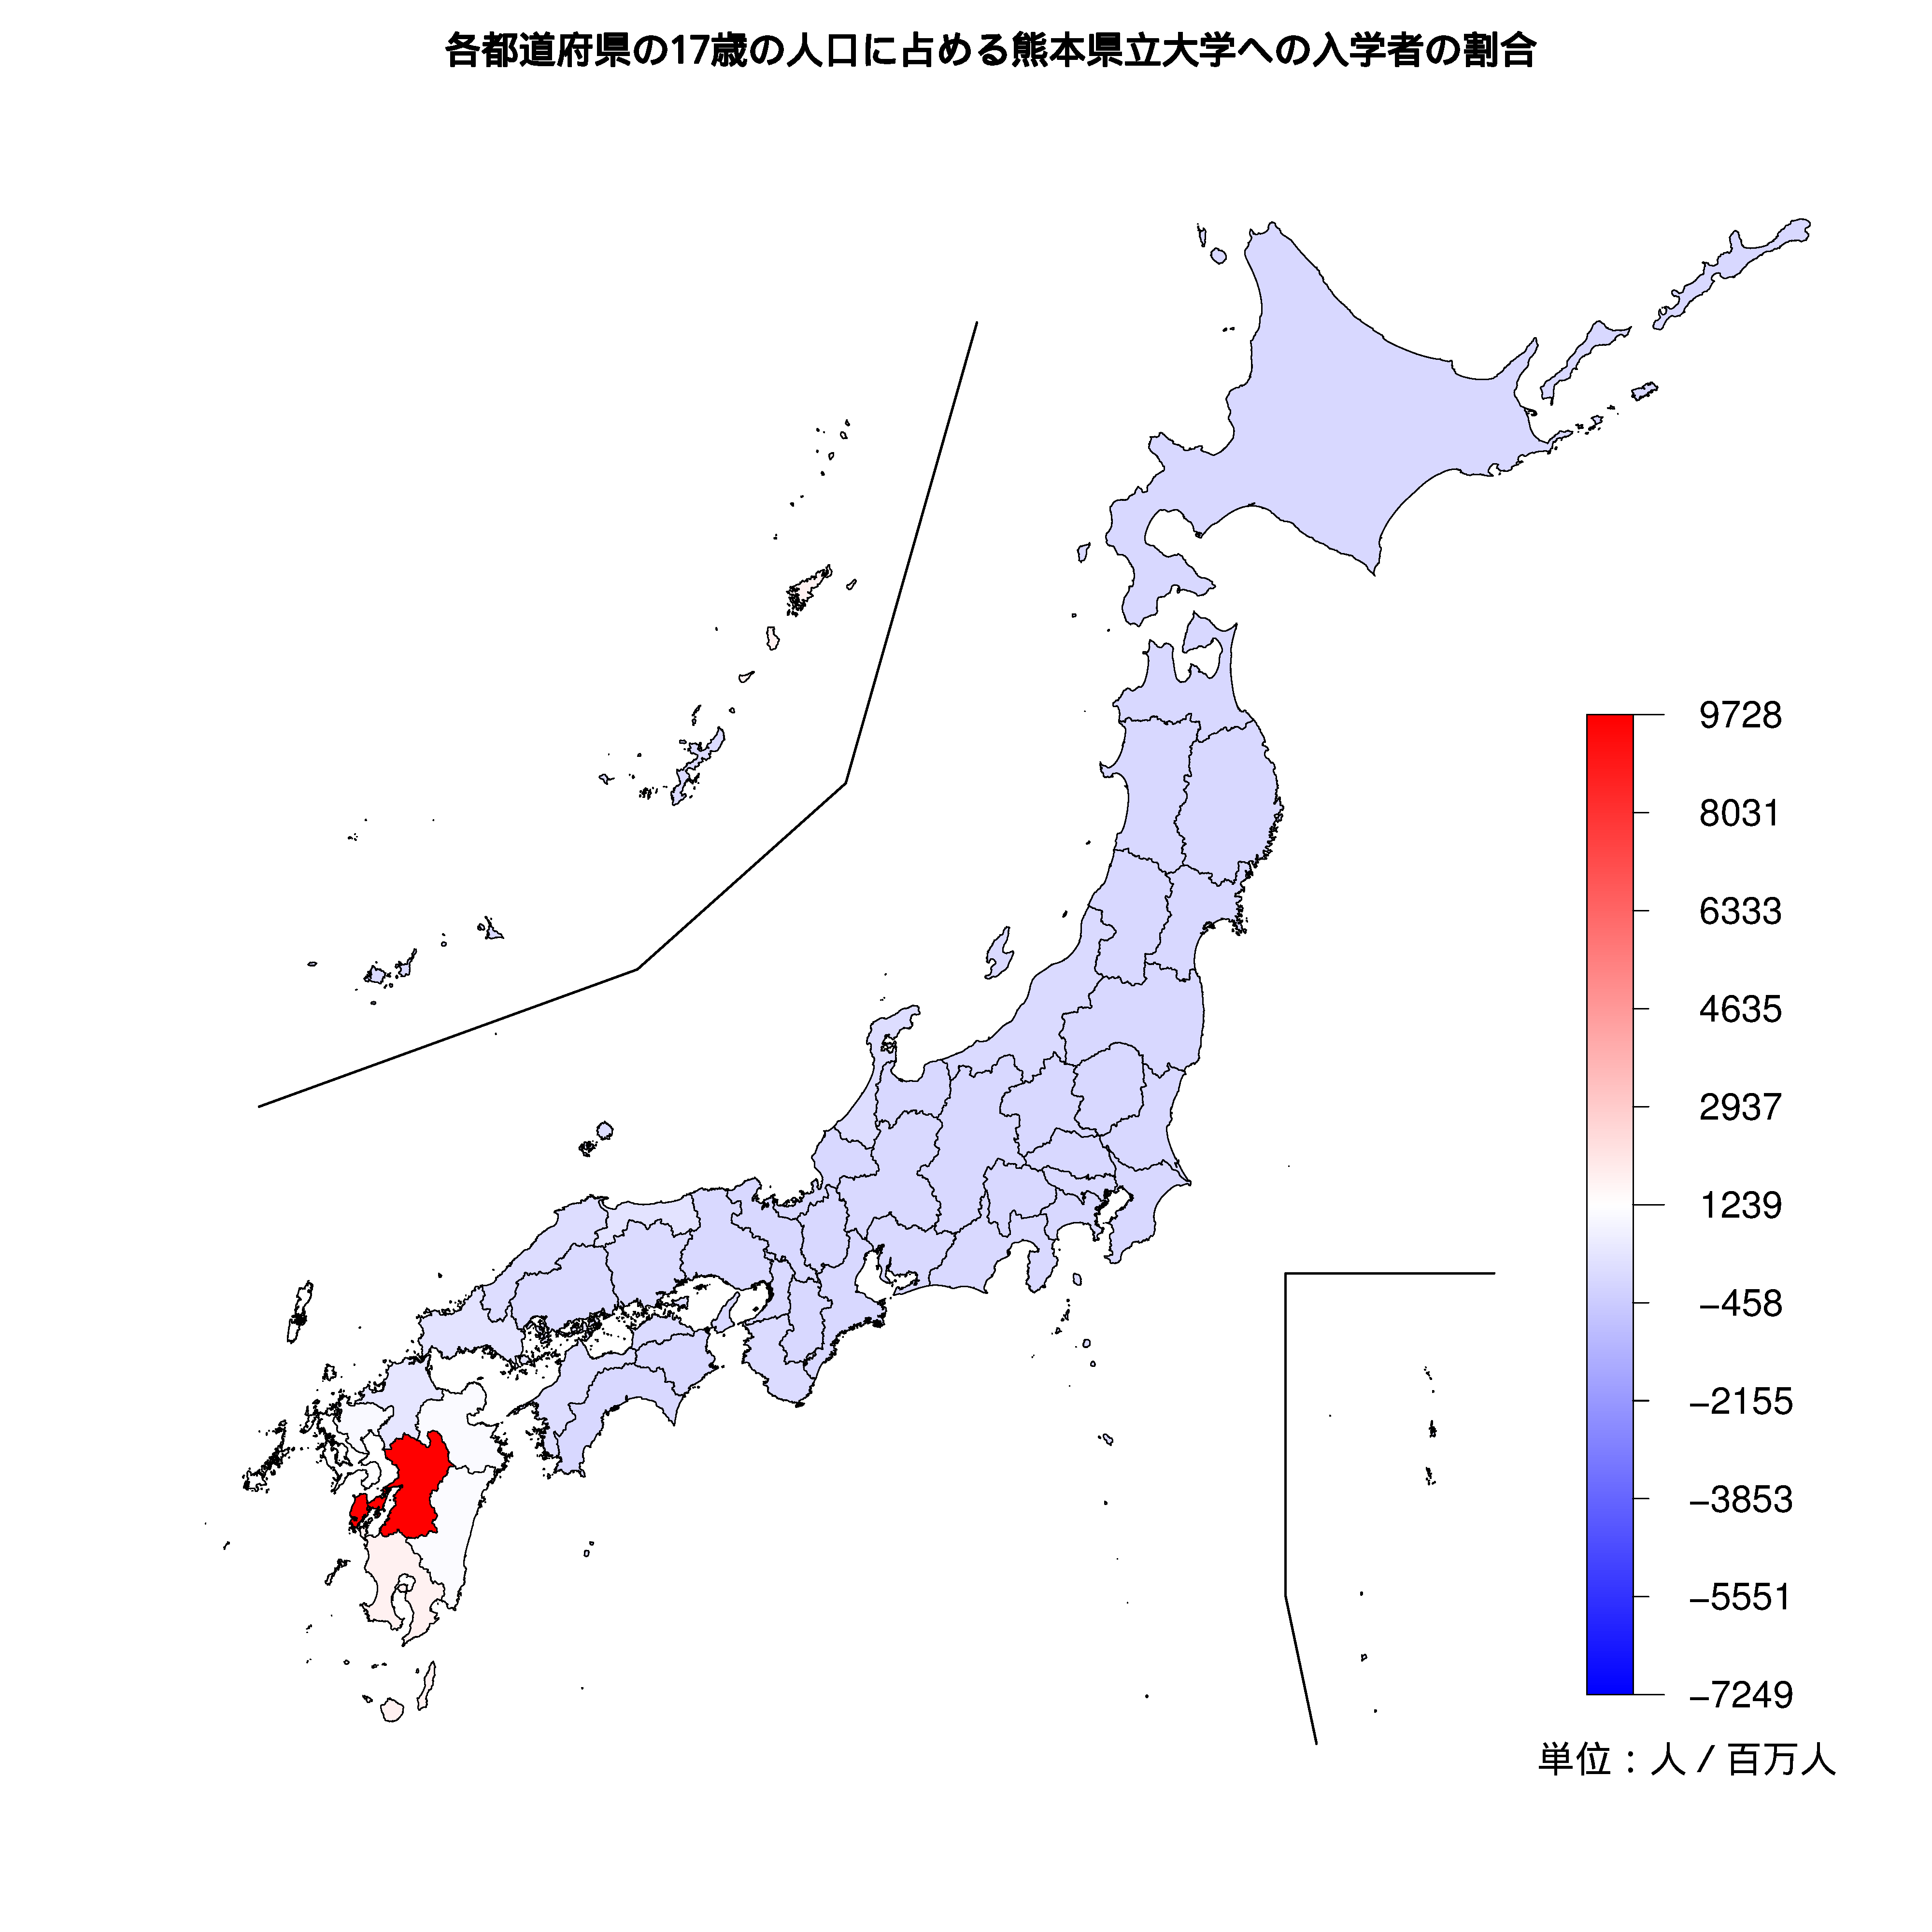 熊本県立大学への入学者が多い都道府県の色分け地図